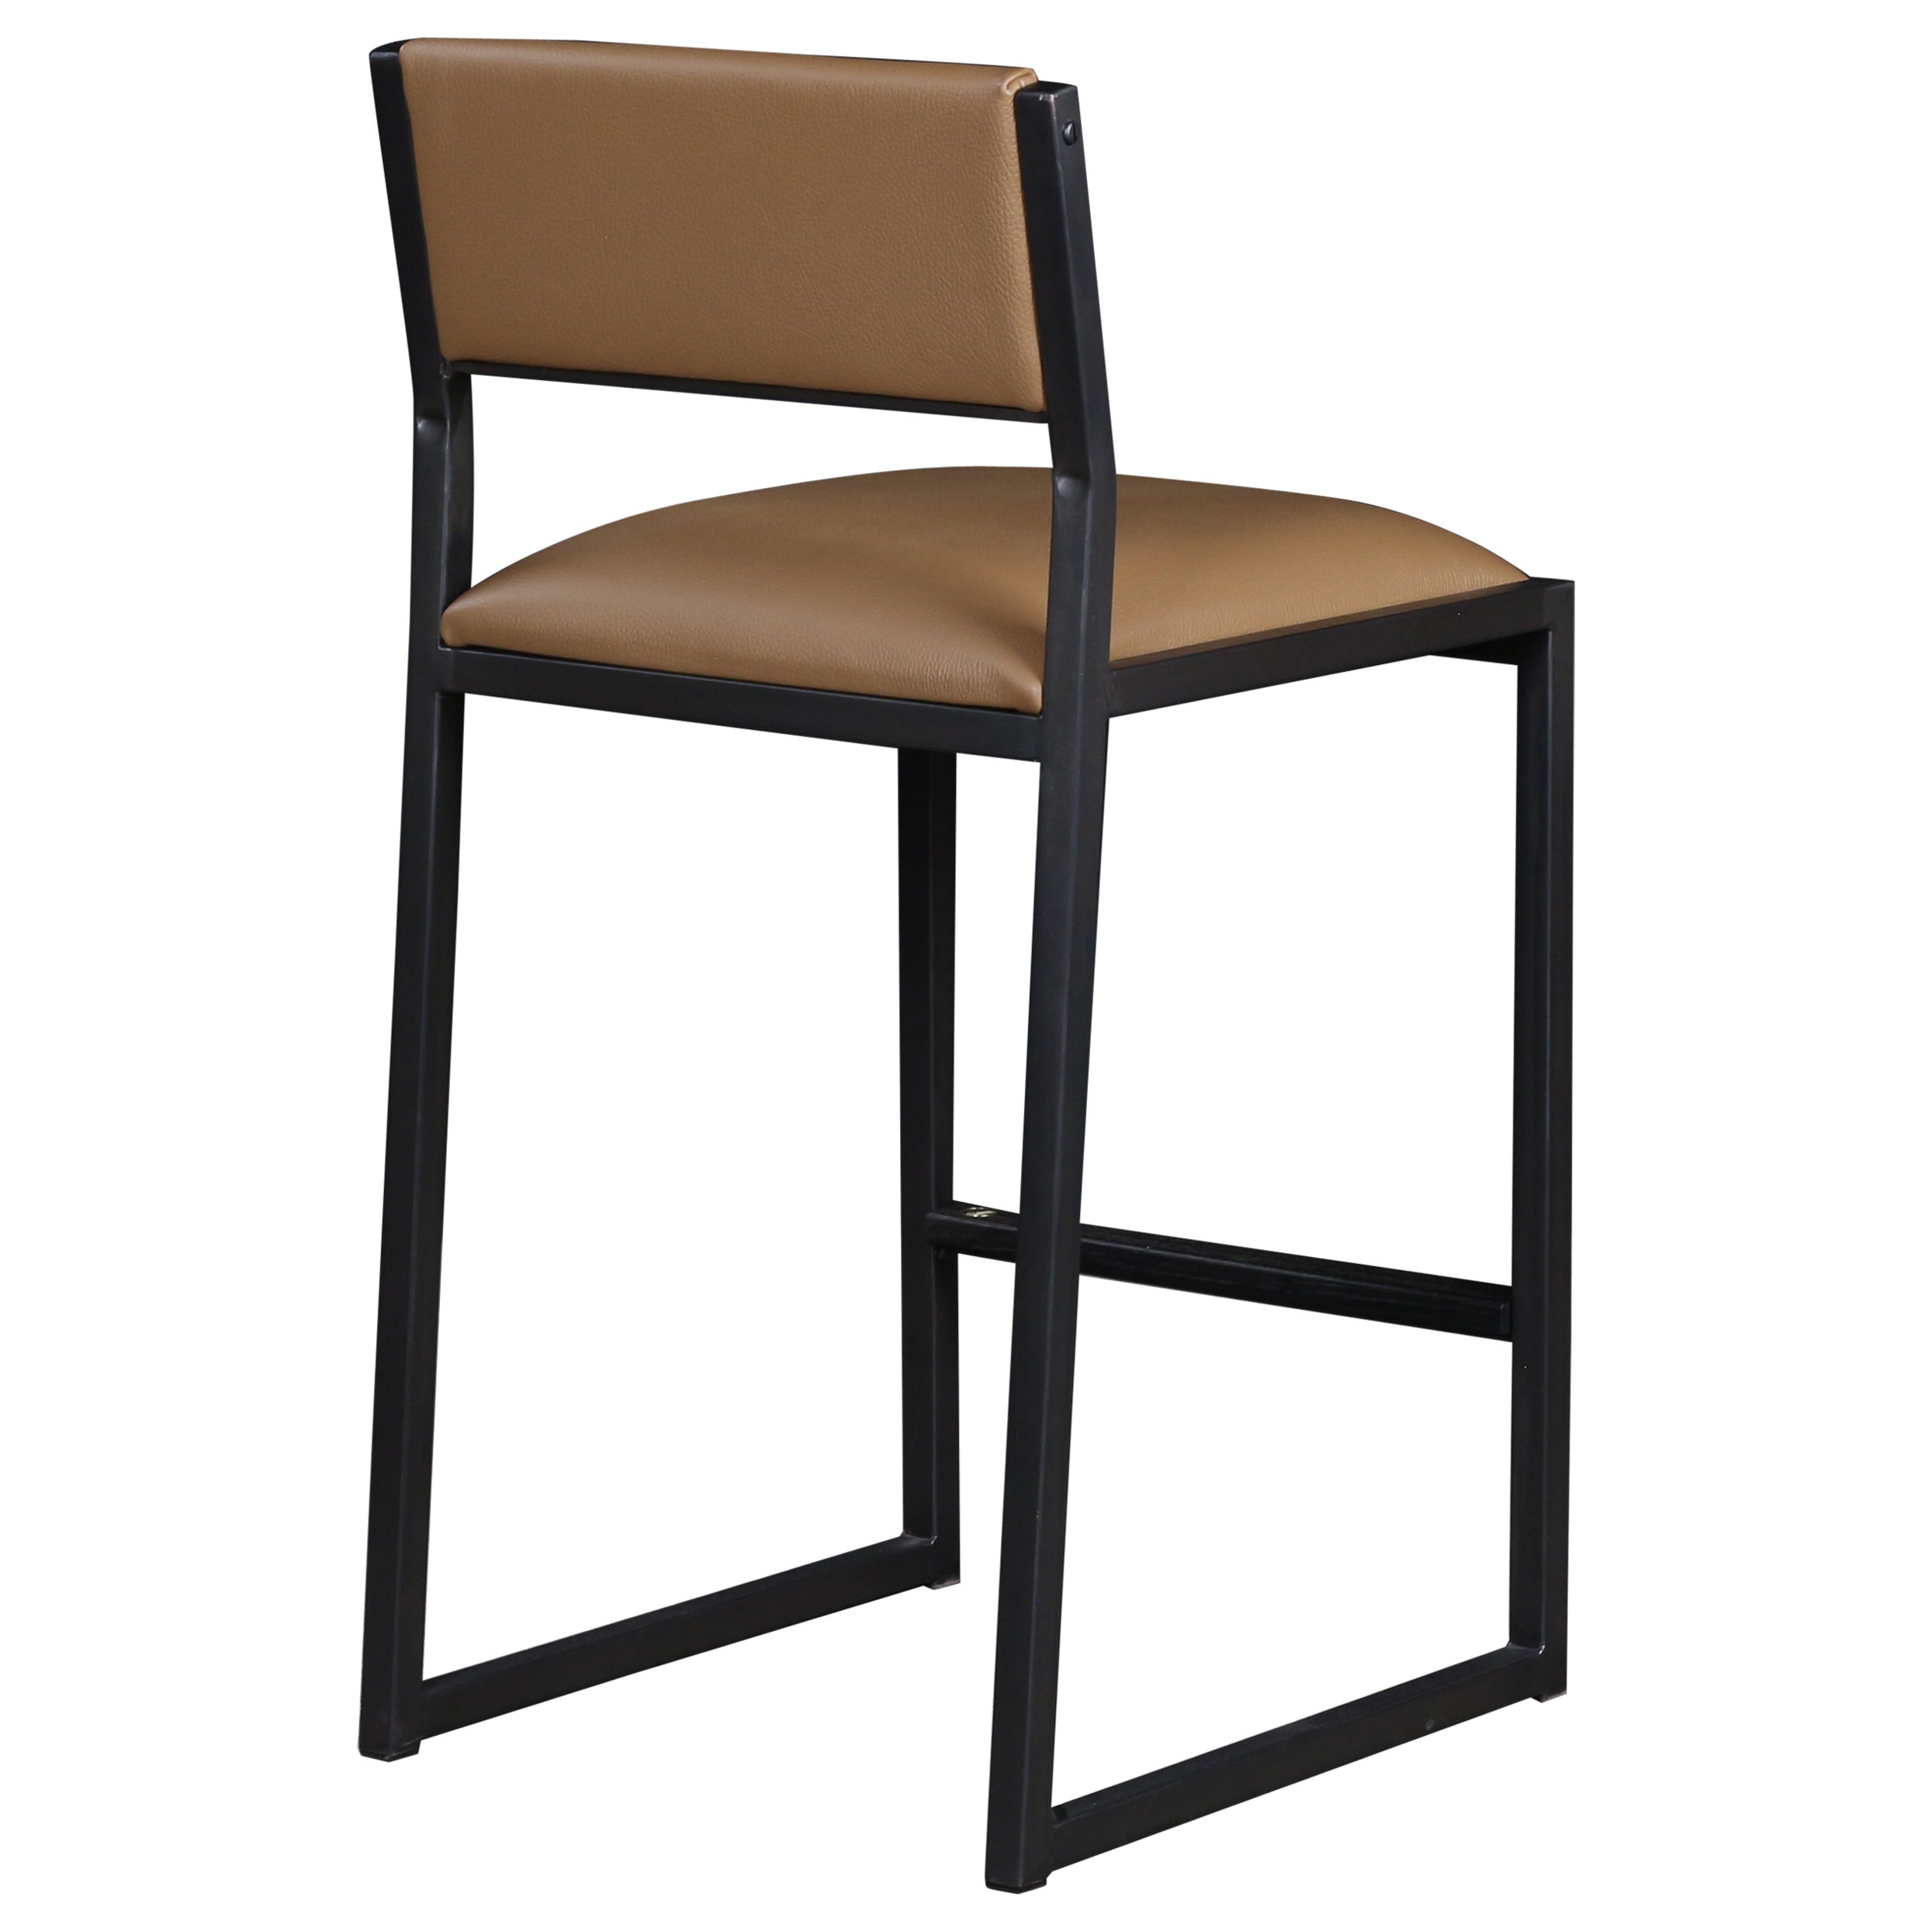 La chaise tabouret de comptoir moderne shaker est fabriquée à la main sur commande. Il est doté d'une structure en métal luxueux de couleur champagne mat et d'une assise et d'un dossier en cuir véritable. Également proposé en COM ou COL. Inspiré par